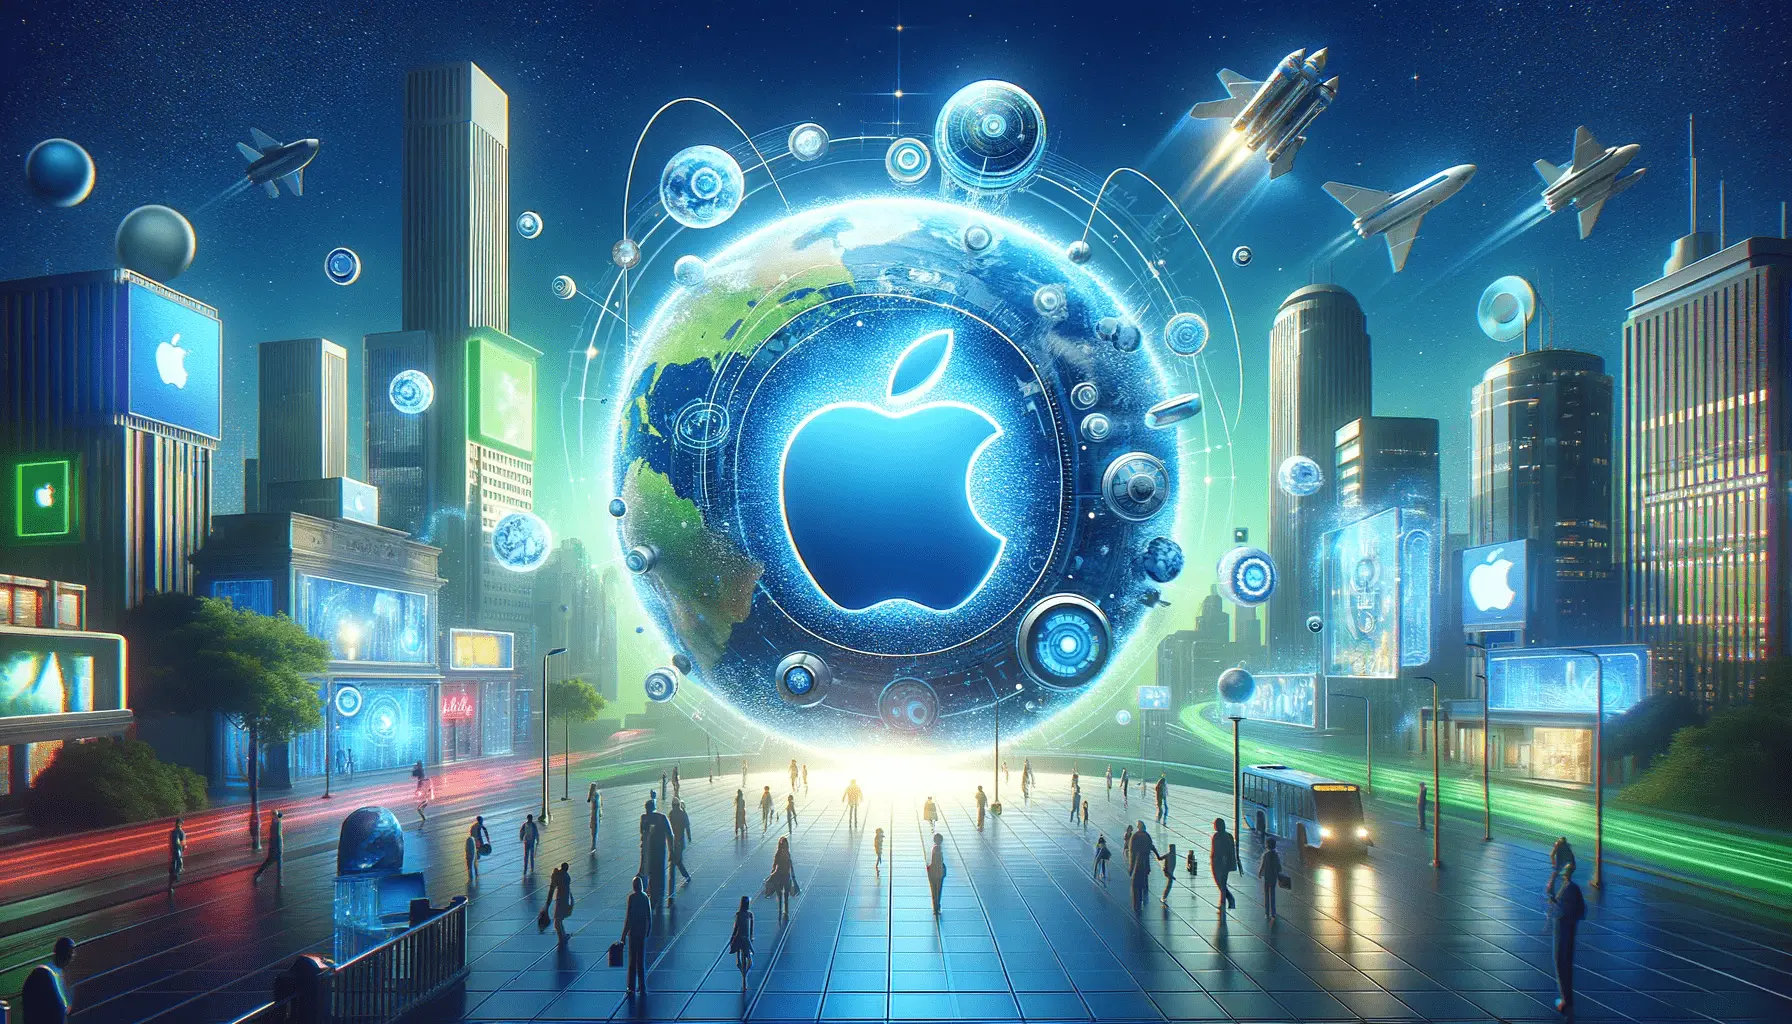 Dijital Reklamcılığın Geleceği ve Apple’ın Rolü